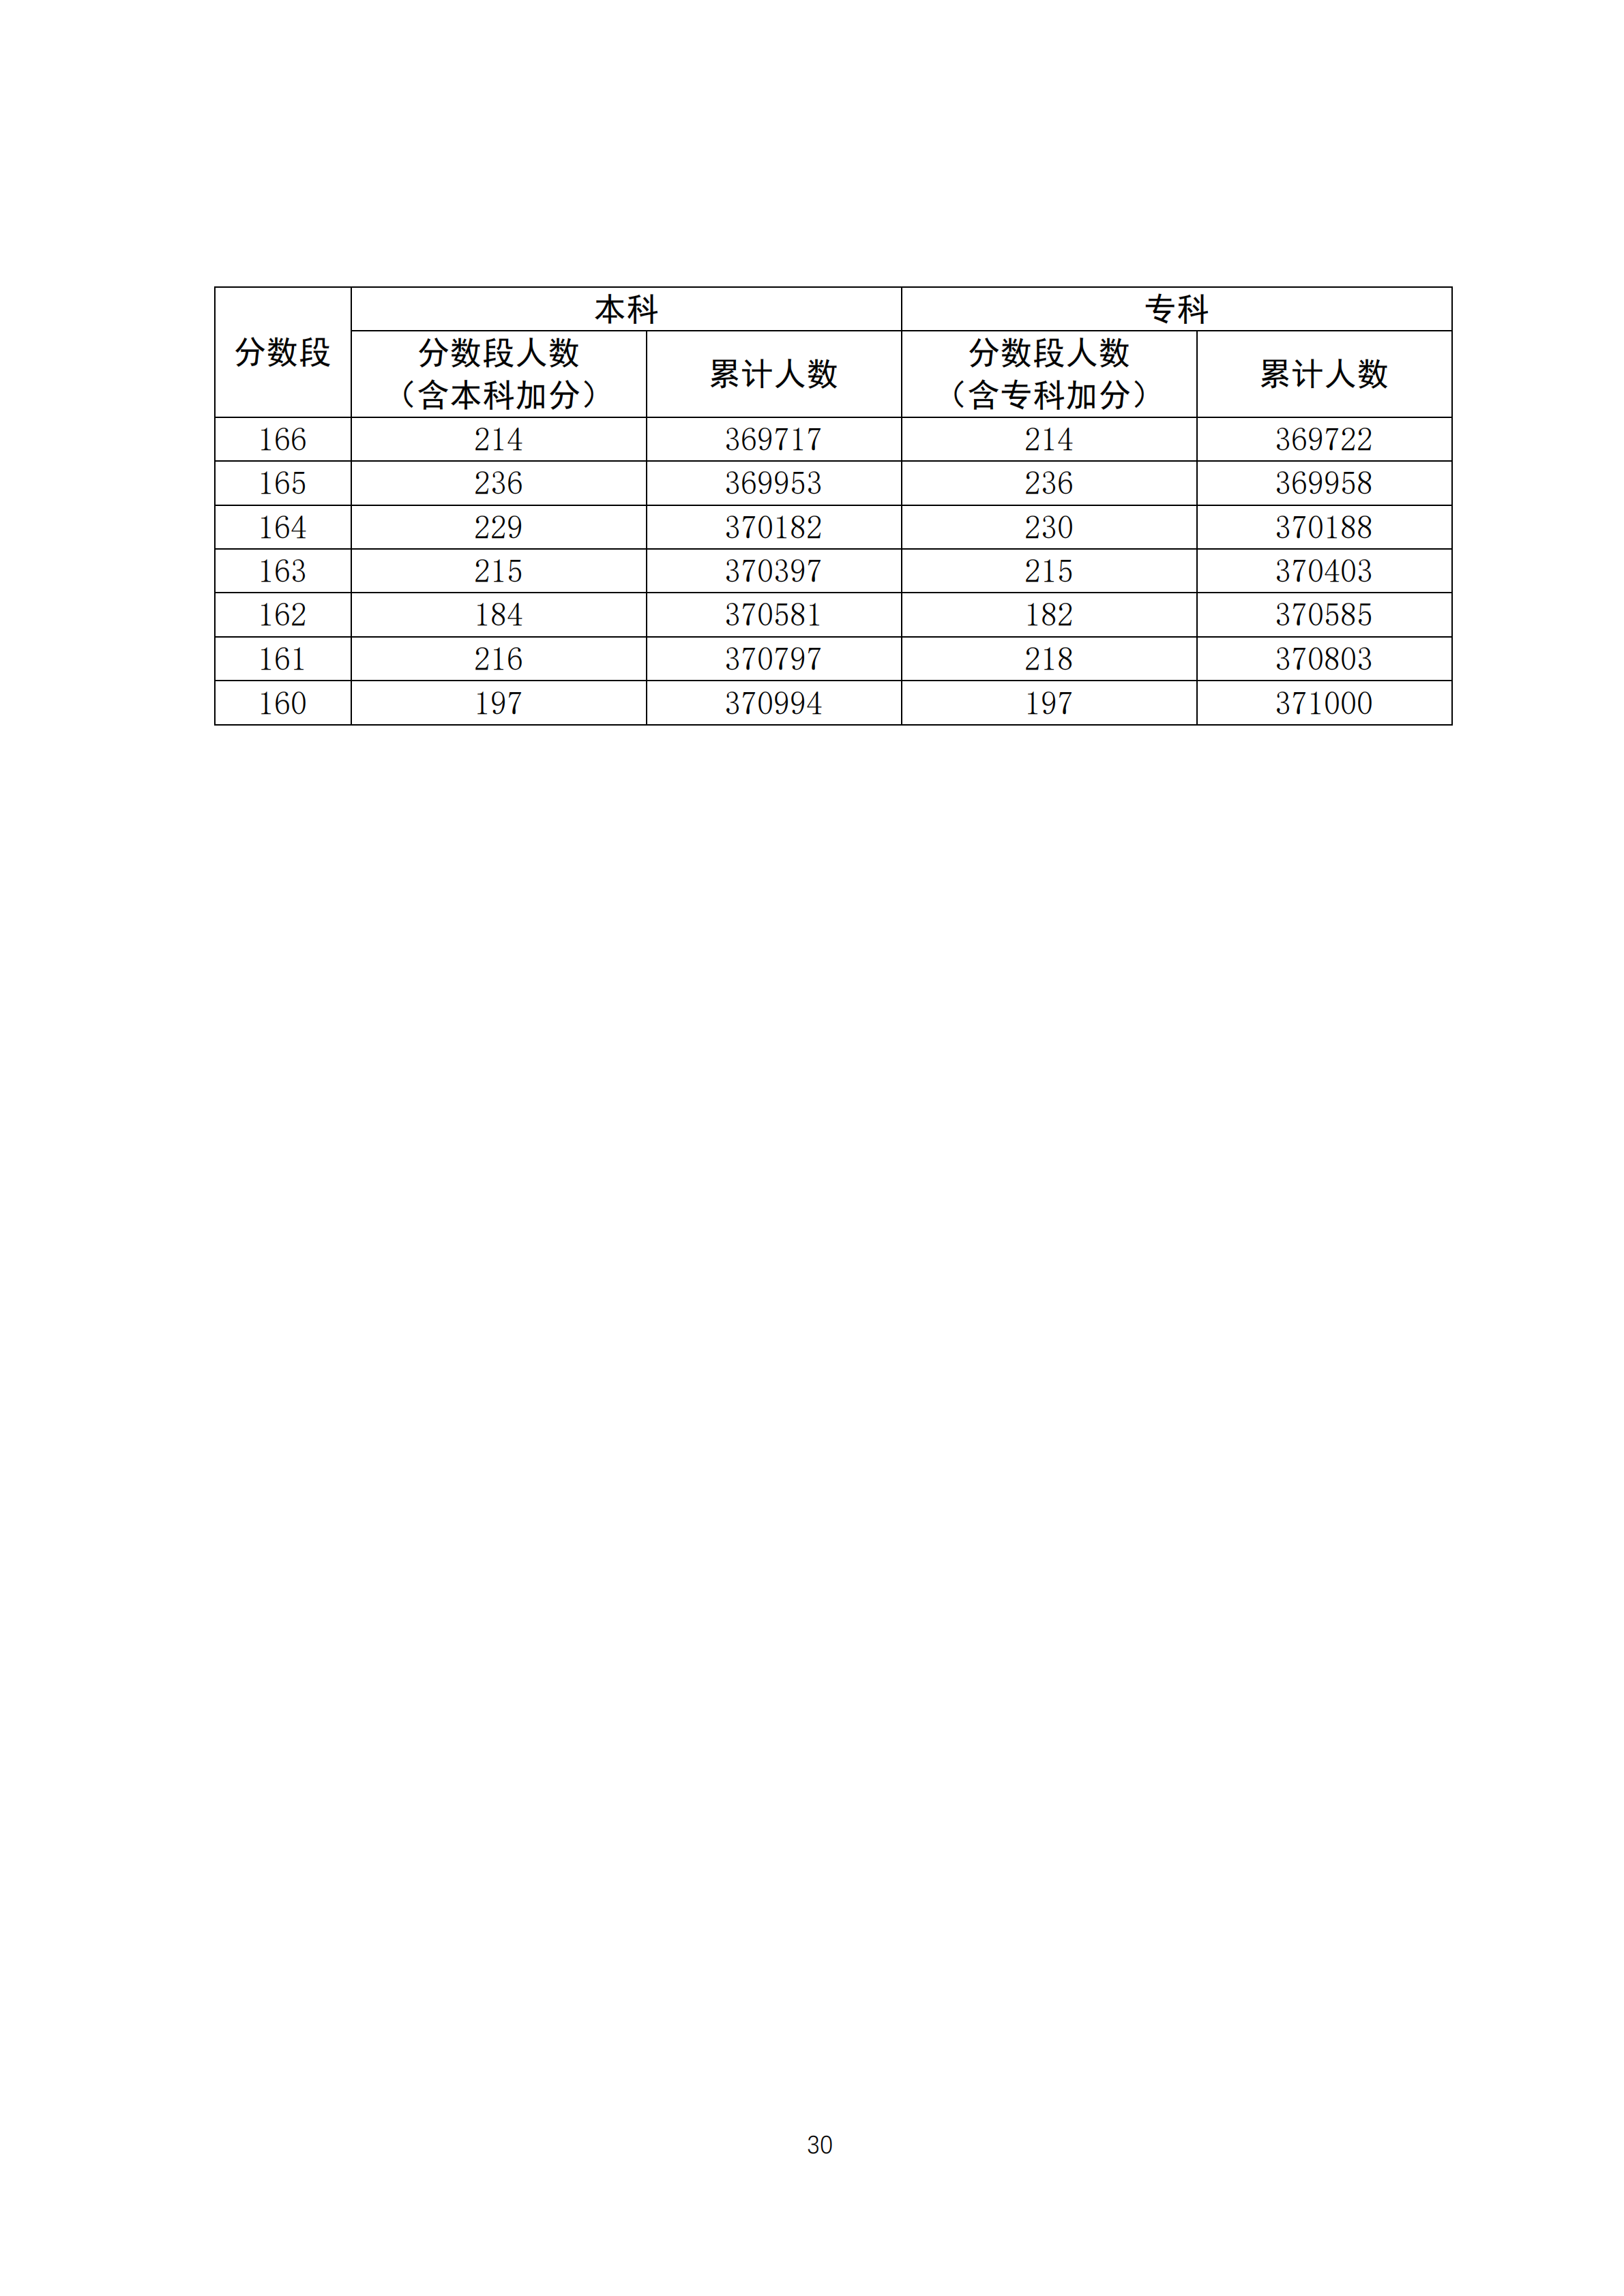 2020年广东高考文科/理科成绩排名 一分一段表